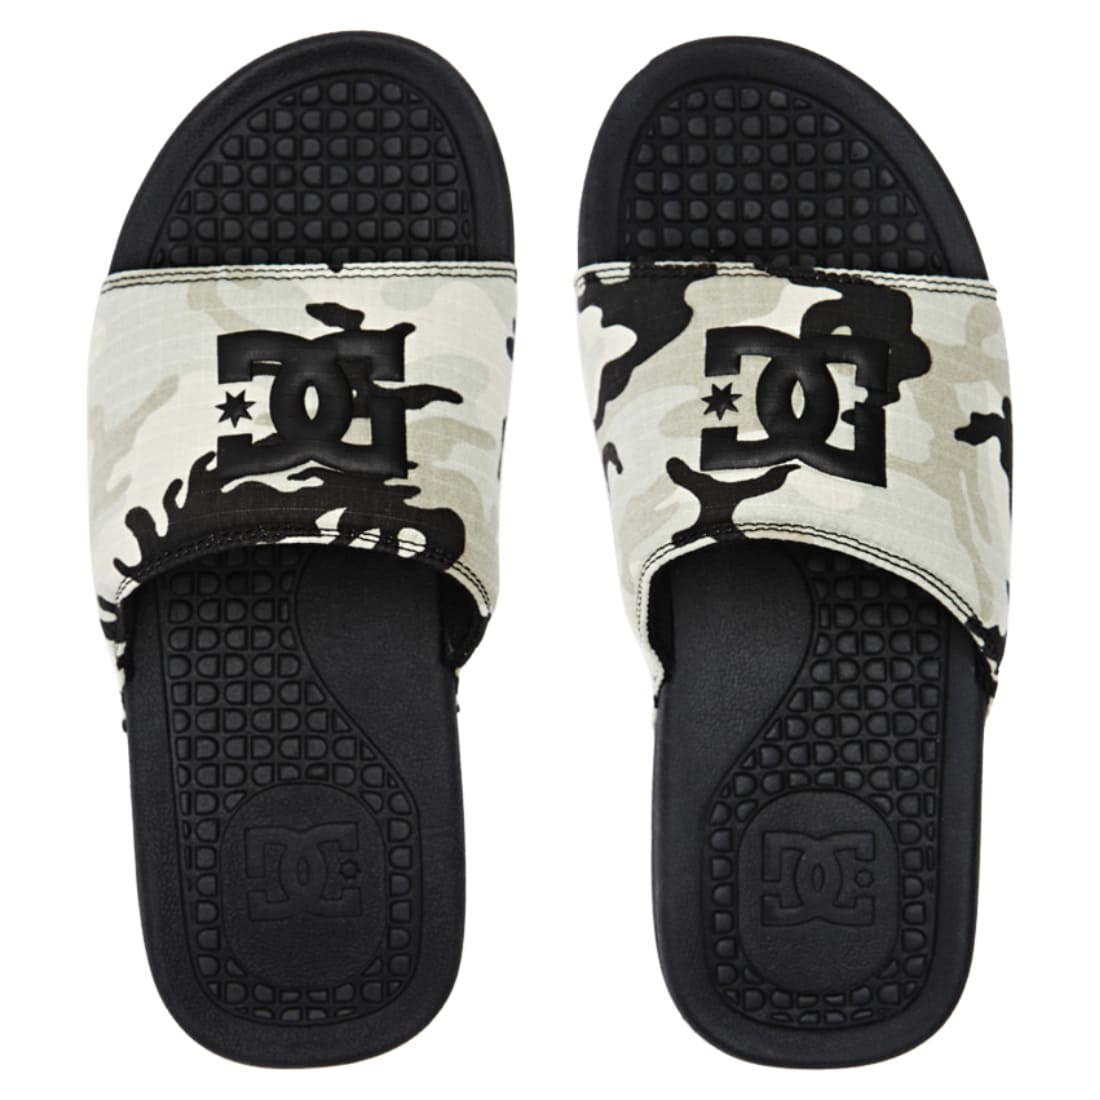 DC Bolsa Slide Sandals - Black/Camel - Mens Flip Flops by DC